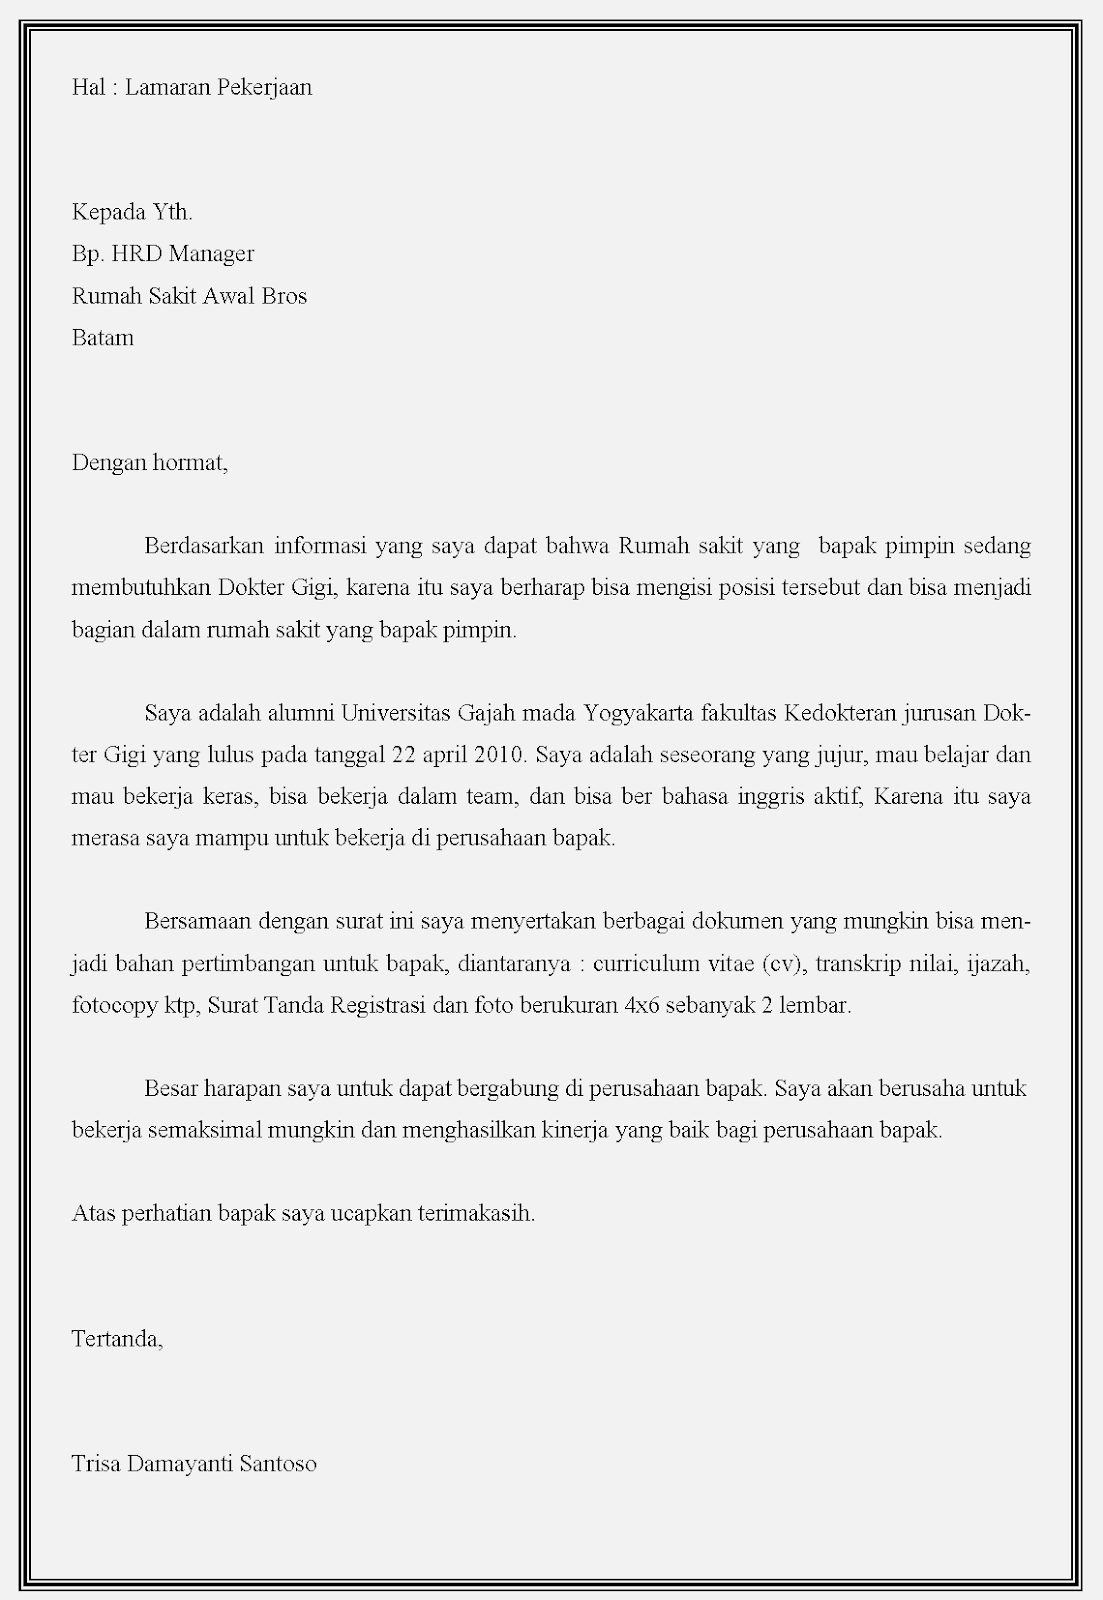 Contoh Surat Lamaran Lengkap Bahasa Indonesia Untuk Instansi Pemerintahan